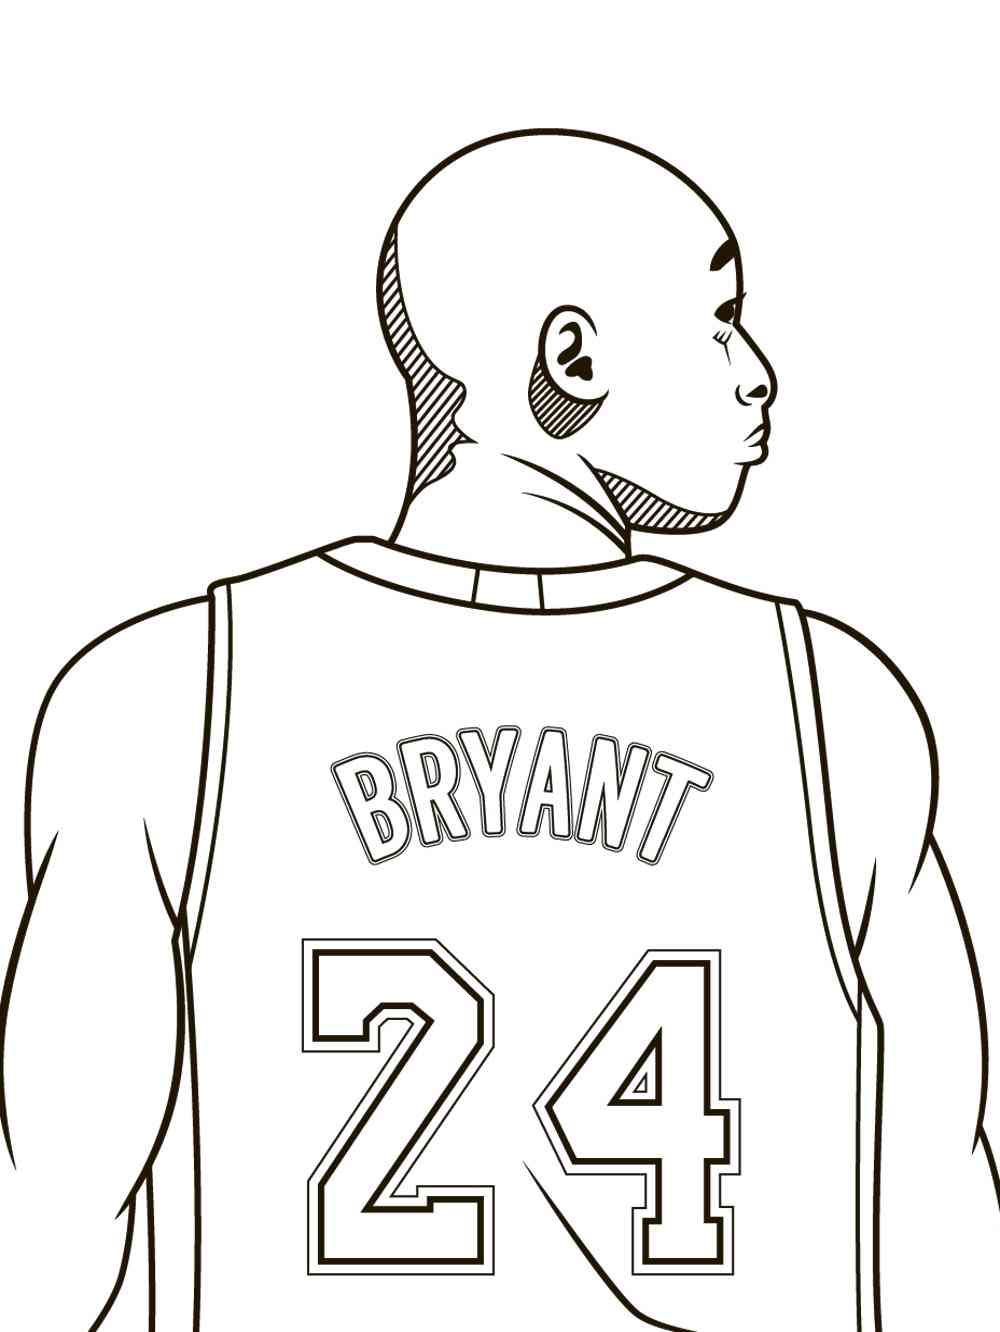 Bryant раскраска